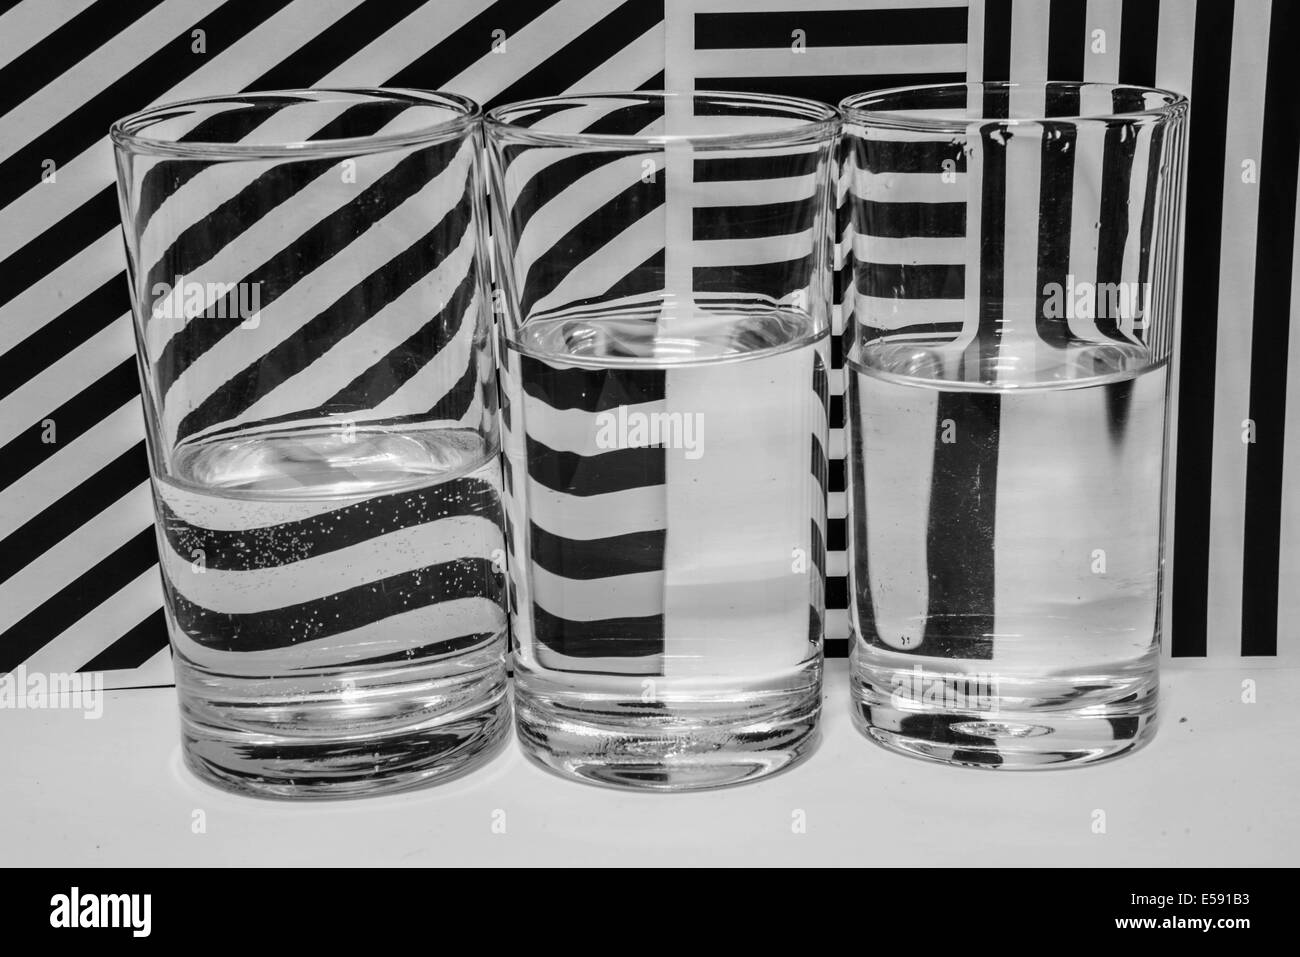 Le pattern design fond noir et blanc. Banque D'Images